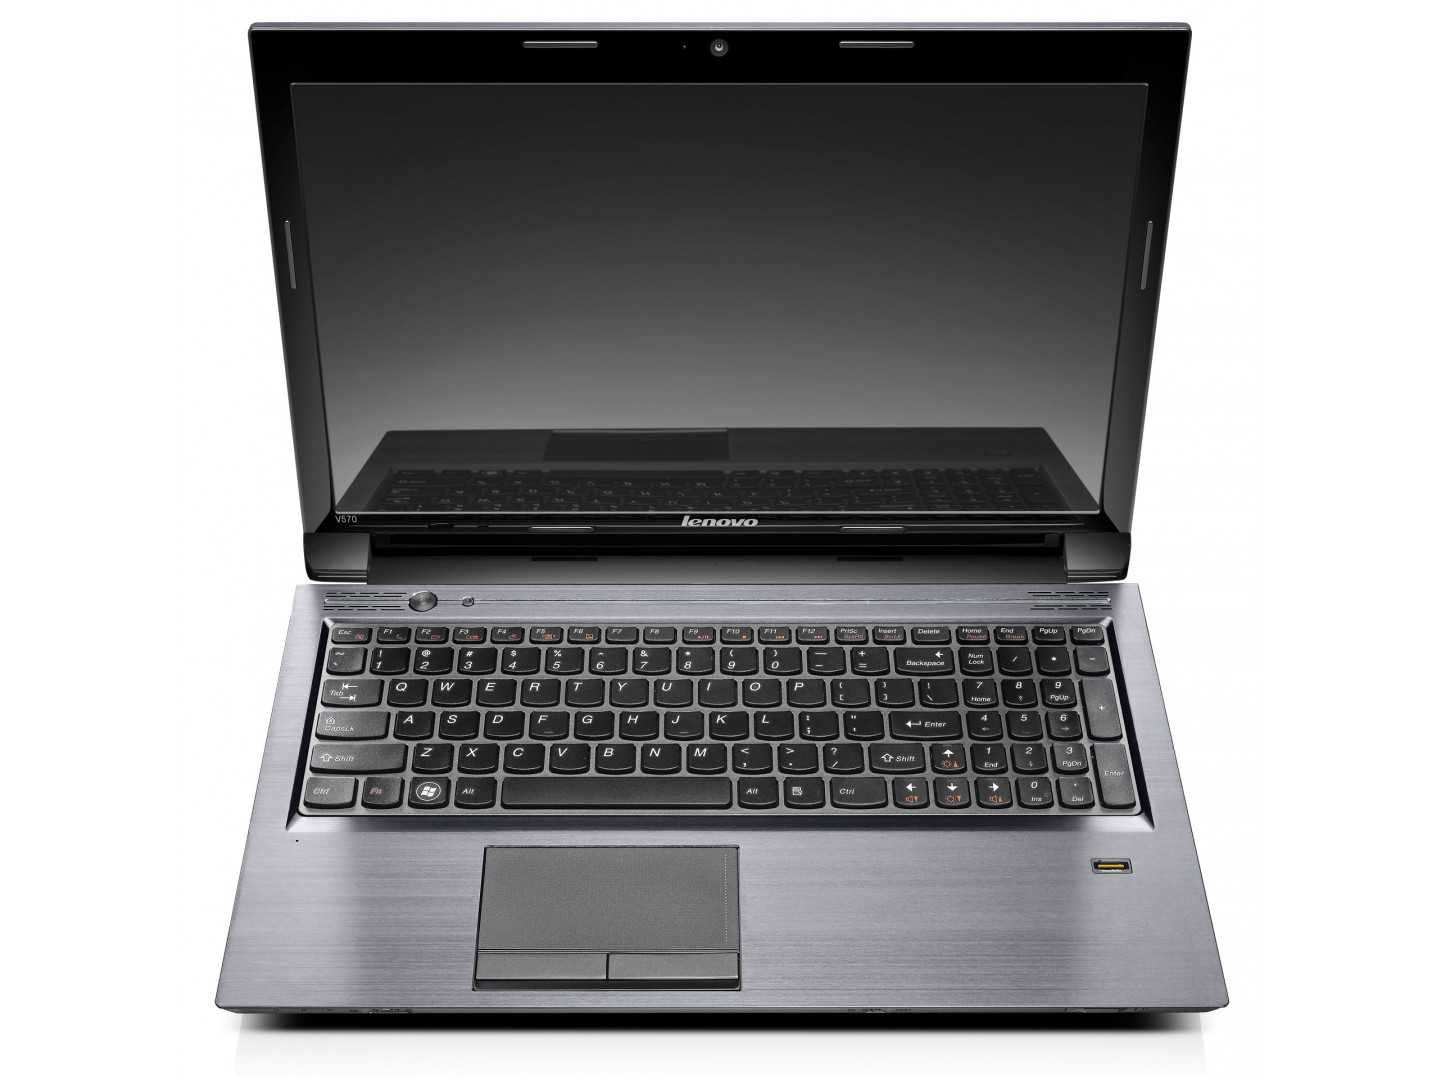 Ноутбук Lenovo IdeaPad V580A (59-332167) - подробные характеристики обзоры видео фото Цены в интернет-магазинах где можно купить ноутбук Lenovo IdeaPad V580A (59-332167)